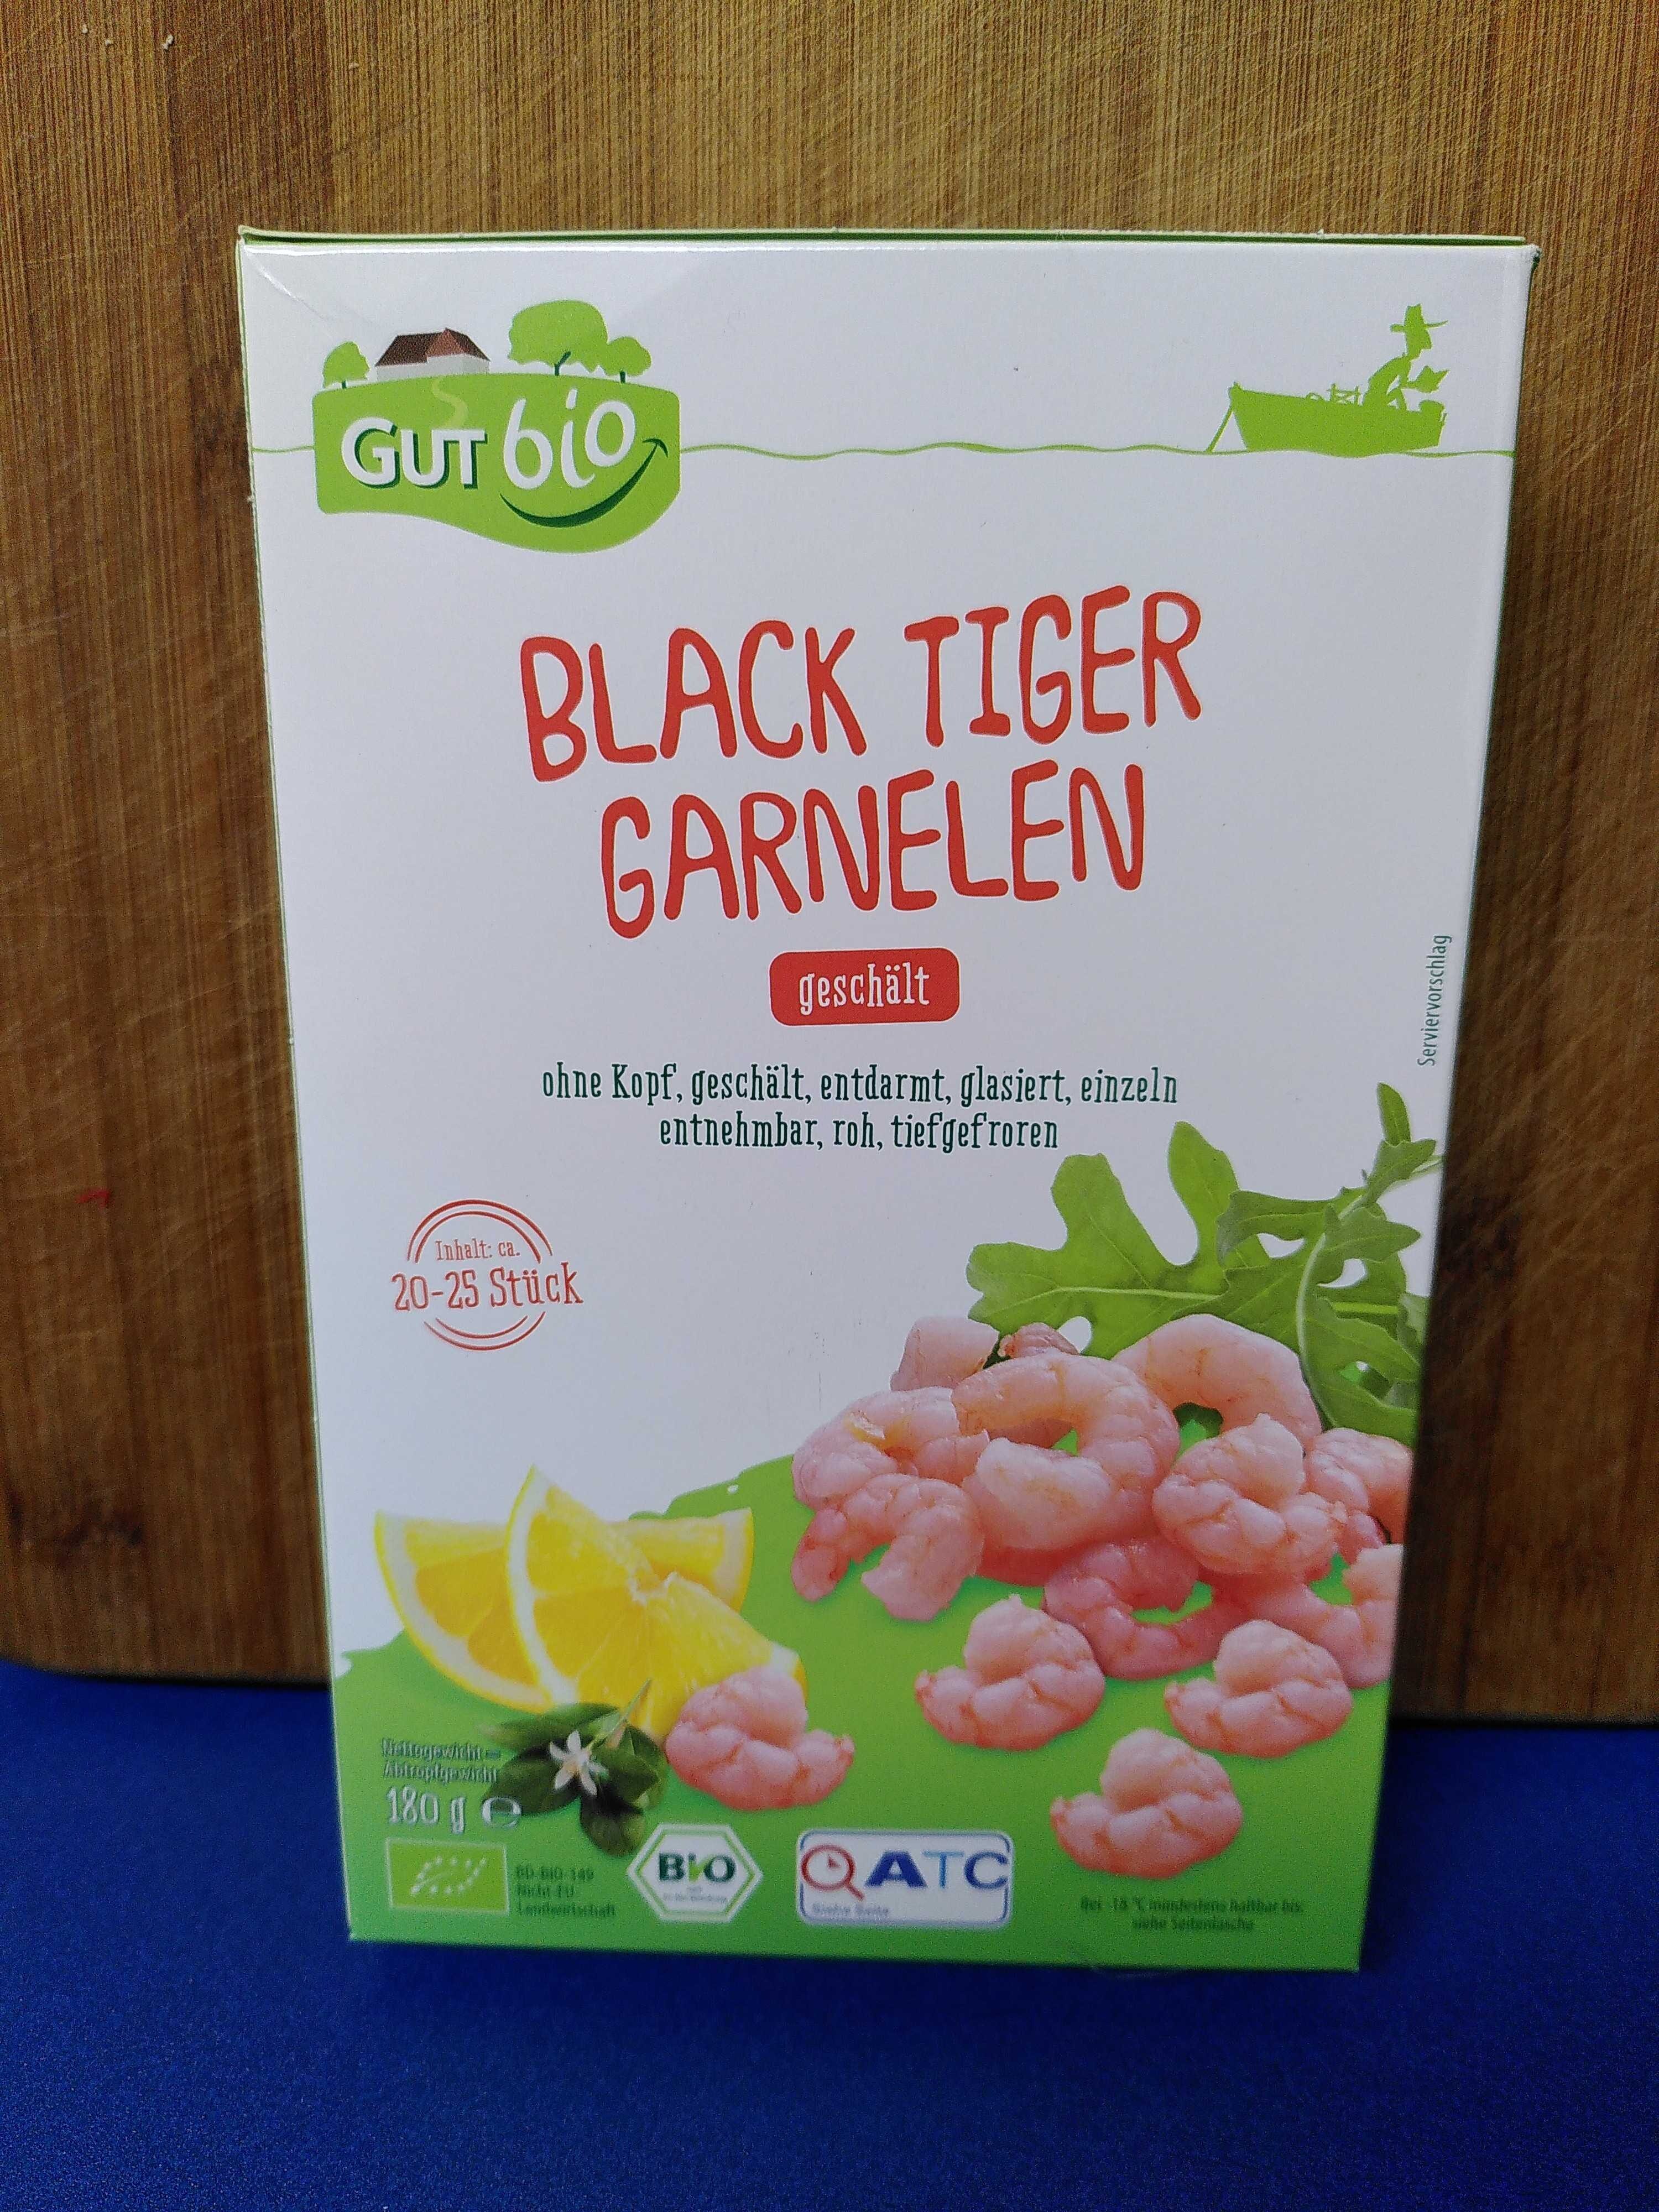 Black Tiger Garnelen geschält - Produkt - en